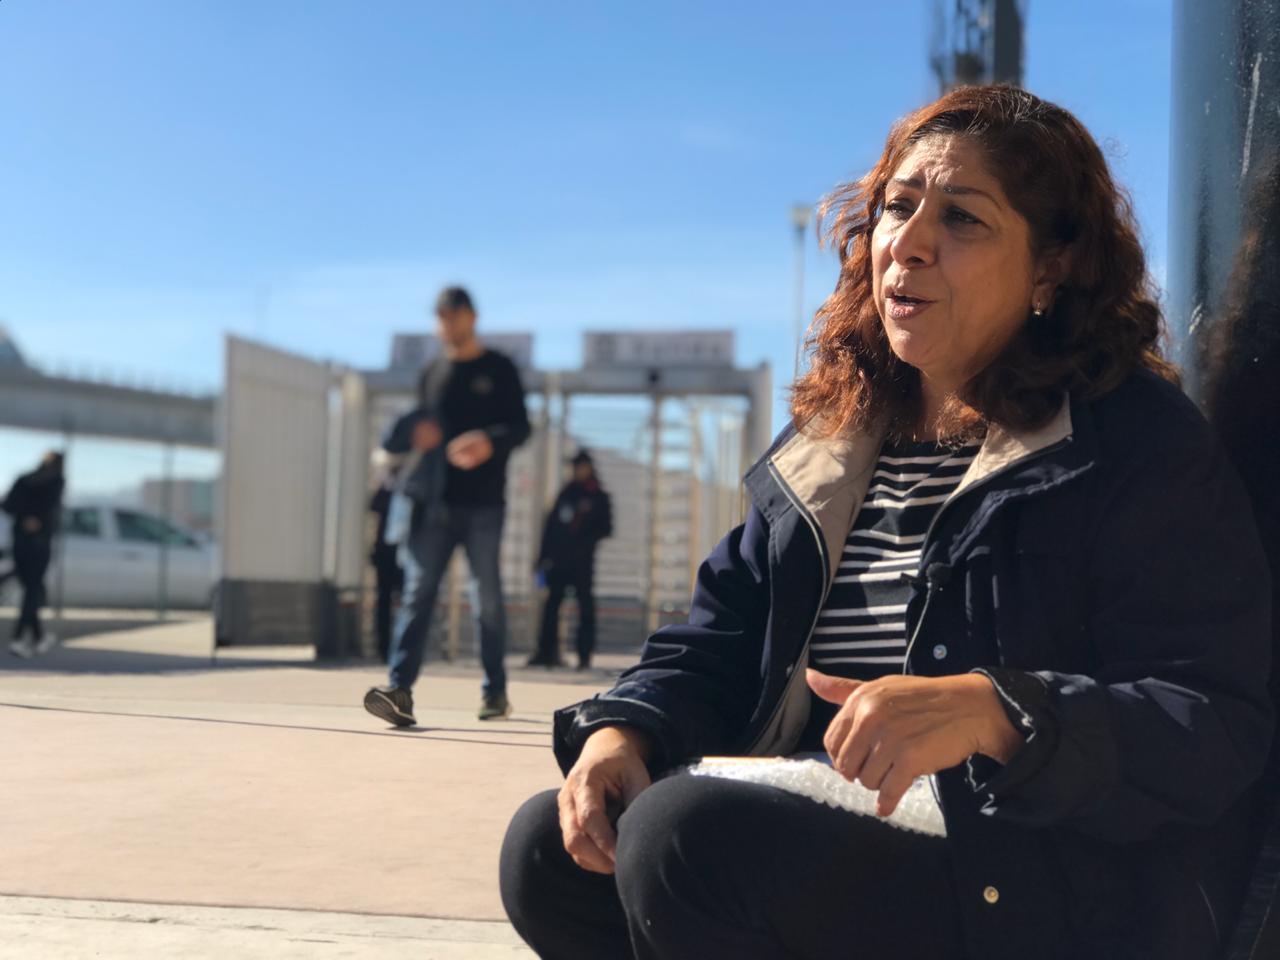 "Mi único delito fue estar aquí": deportan a madre hispana ...